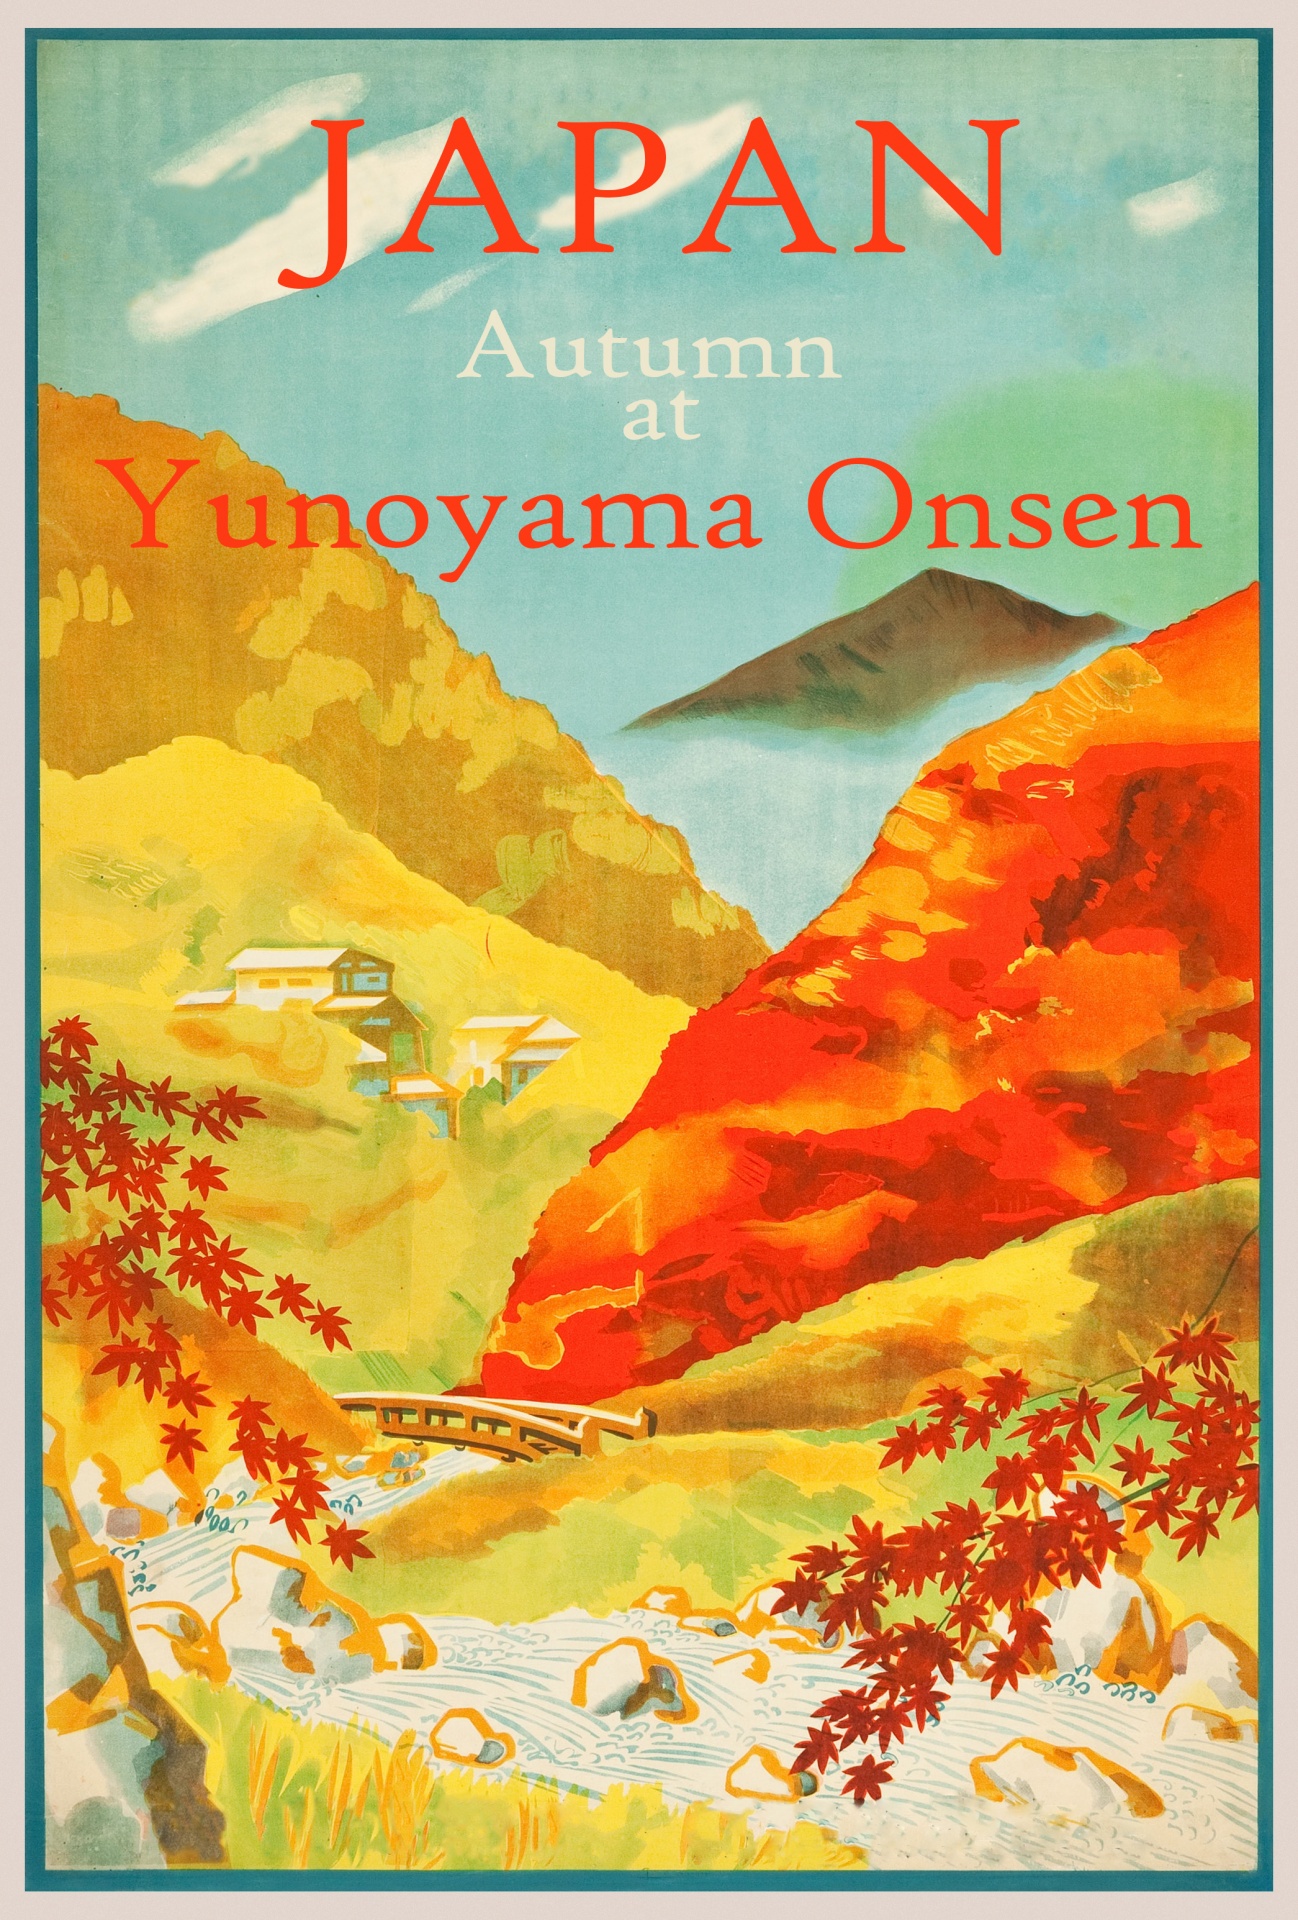 Vintage do poster de viagens de Japão